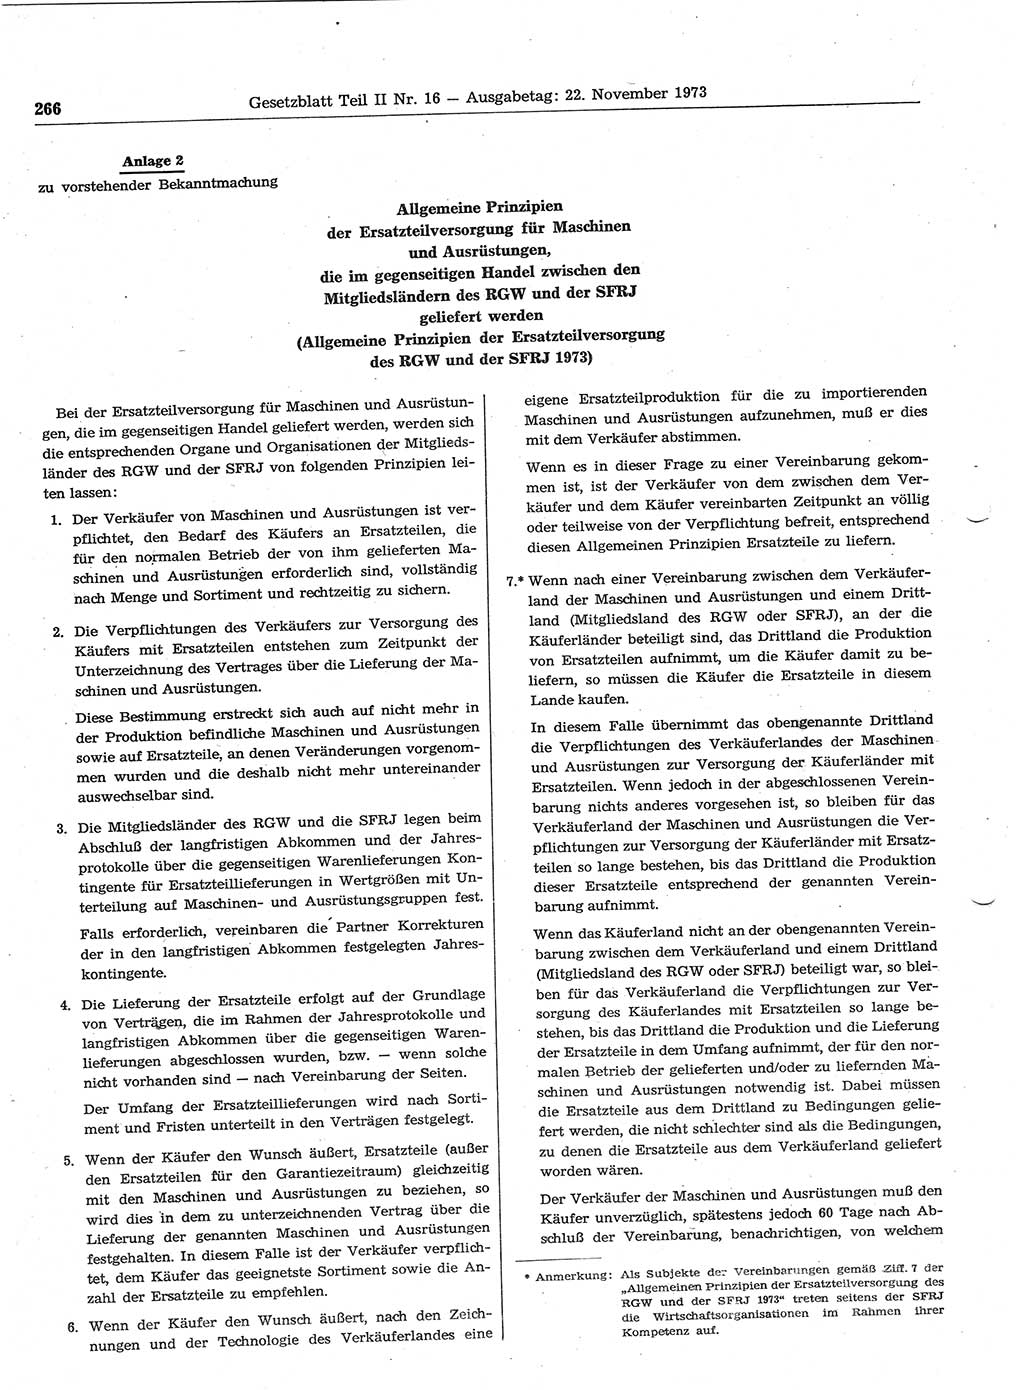 Gesetzblatt (GBl.) der Deutschen Demokratischen Republik (DDR) Teil ⅠⅠ 1973, Seite 266 (GBl. DDR ⅠⅠ 1973, S. 266)